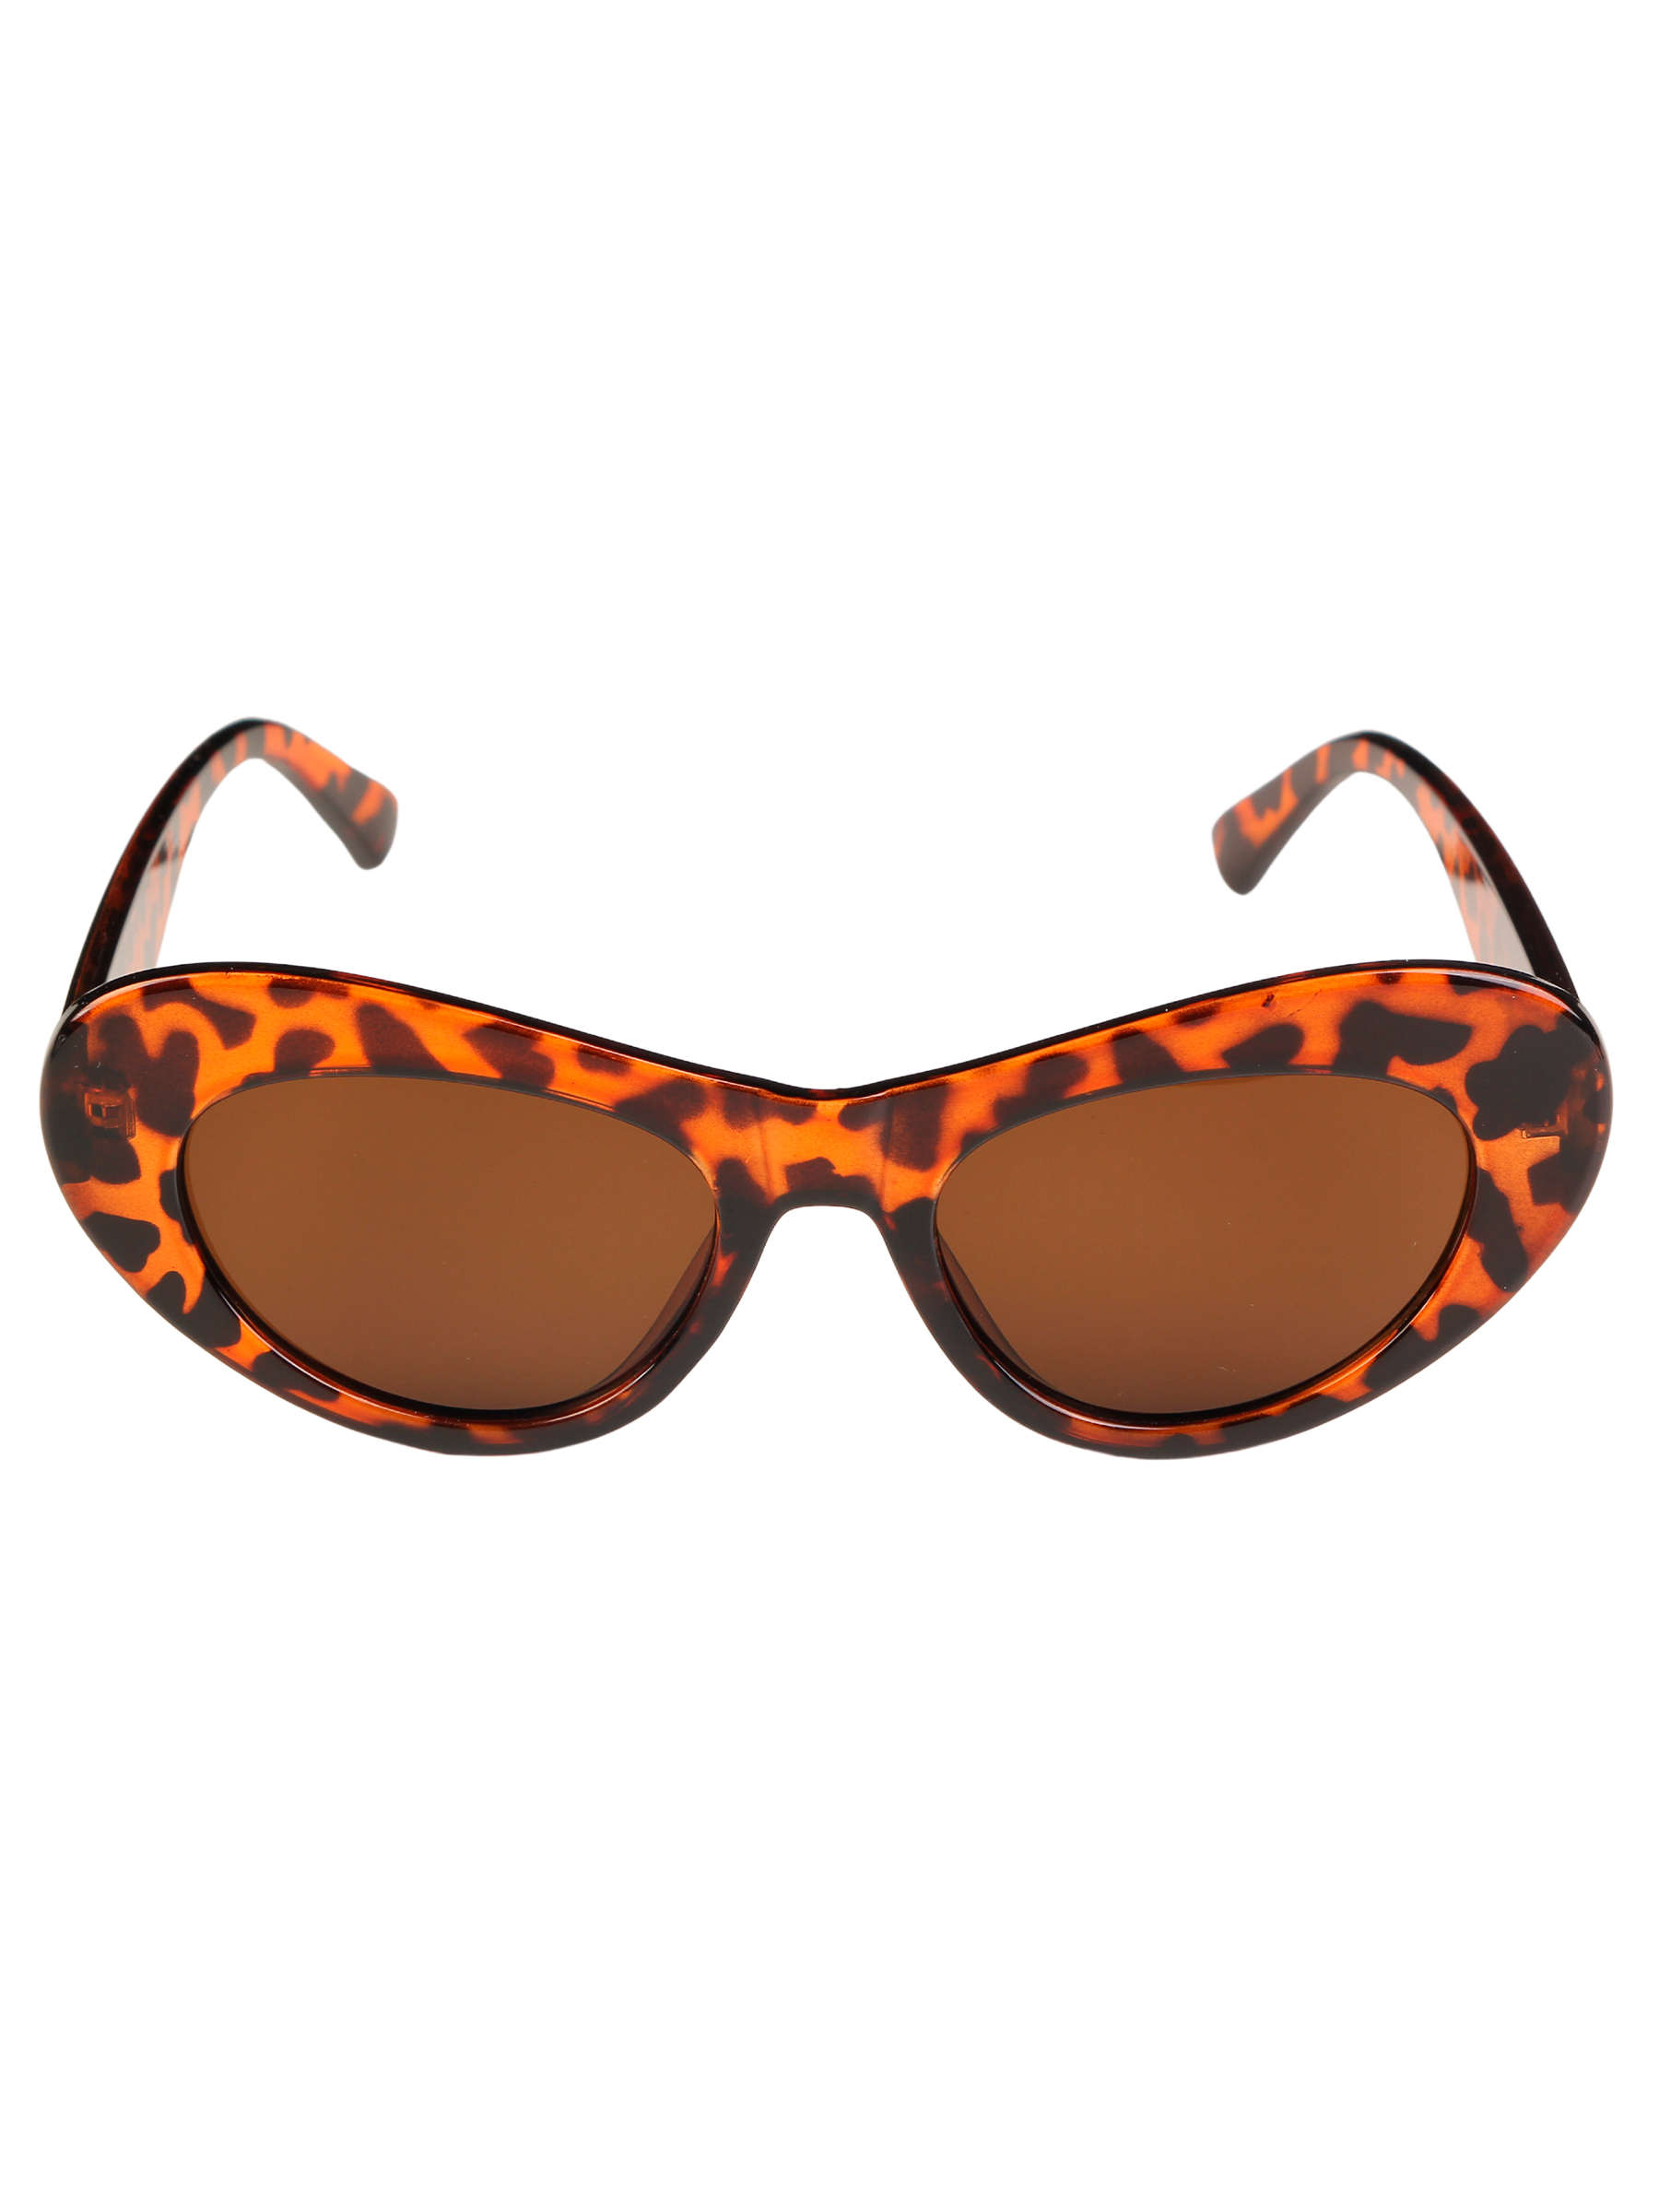 Солнцезащитные очки женские Pretty Mania DD027 коричневые